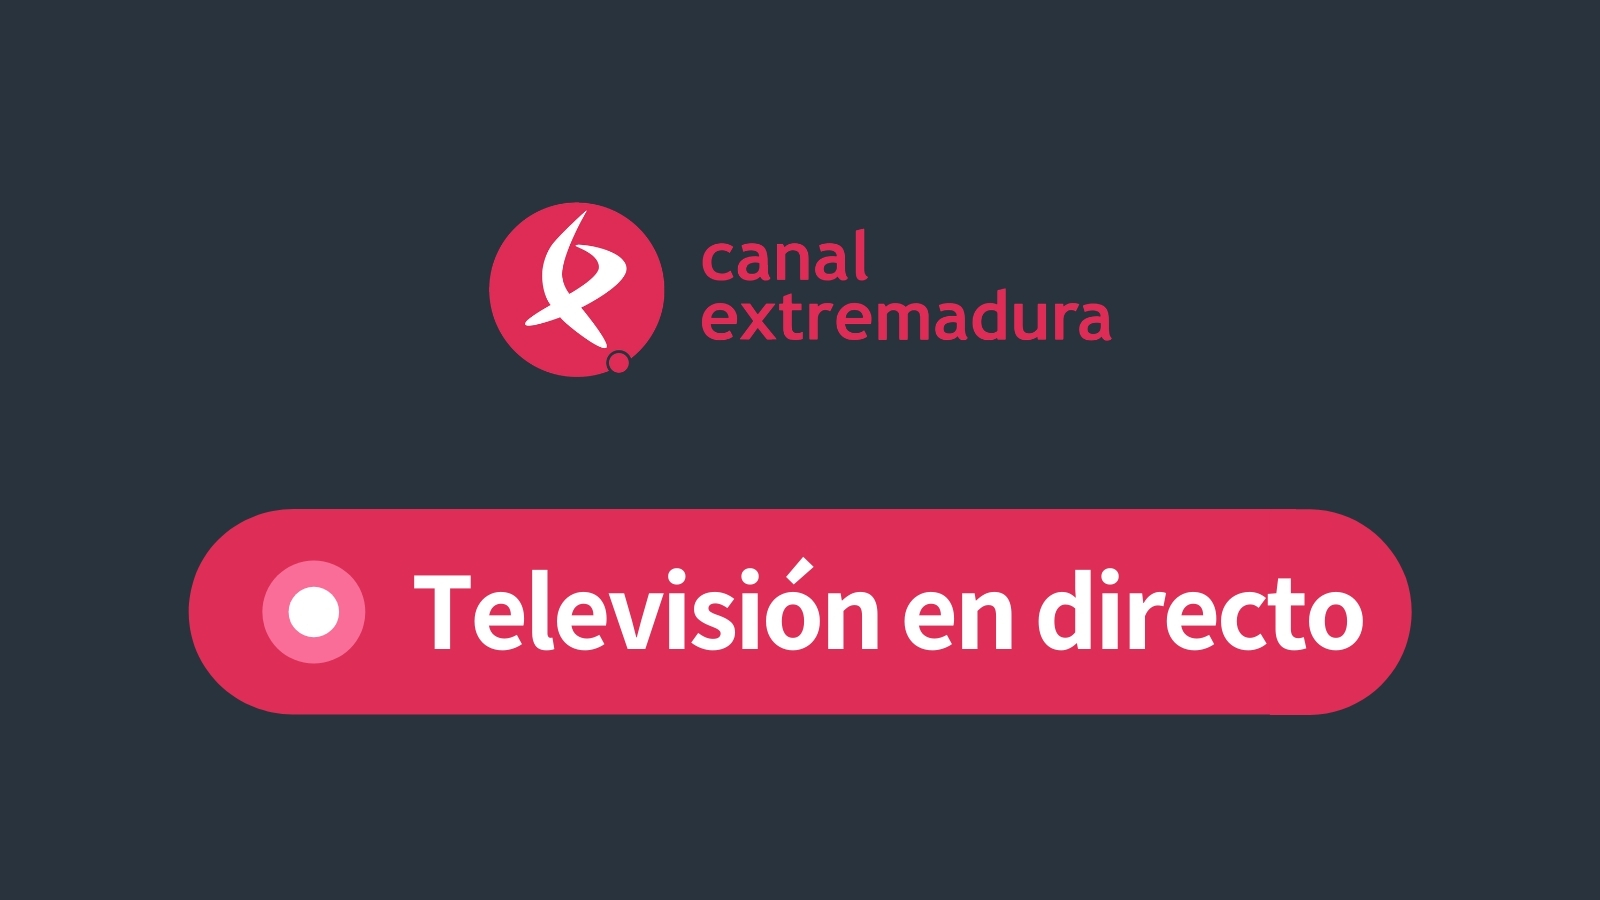 www.canalextremadura.es